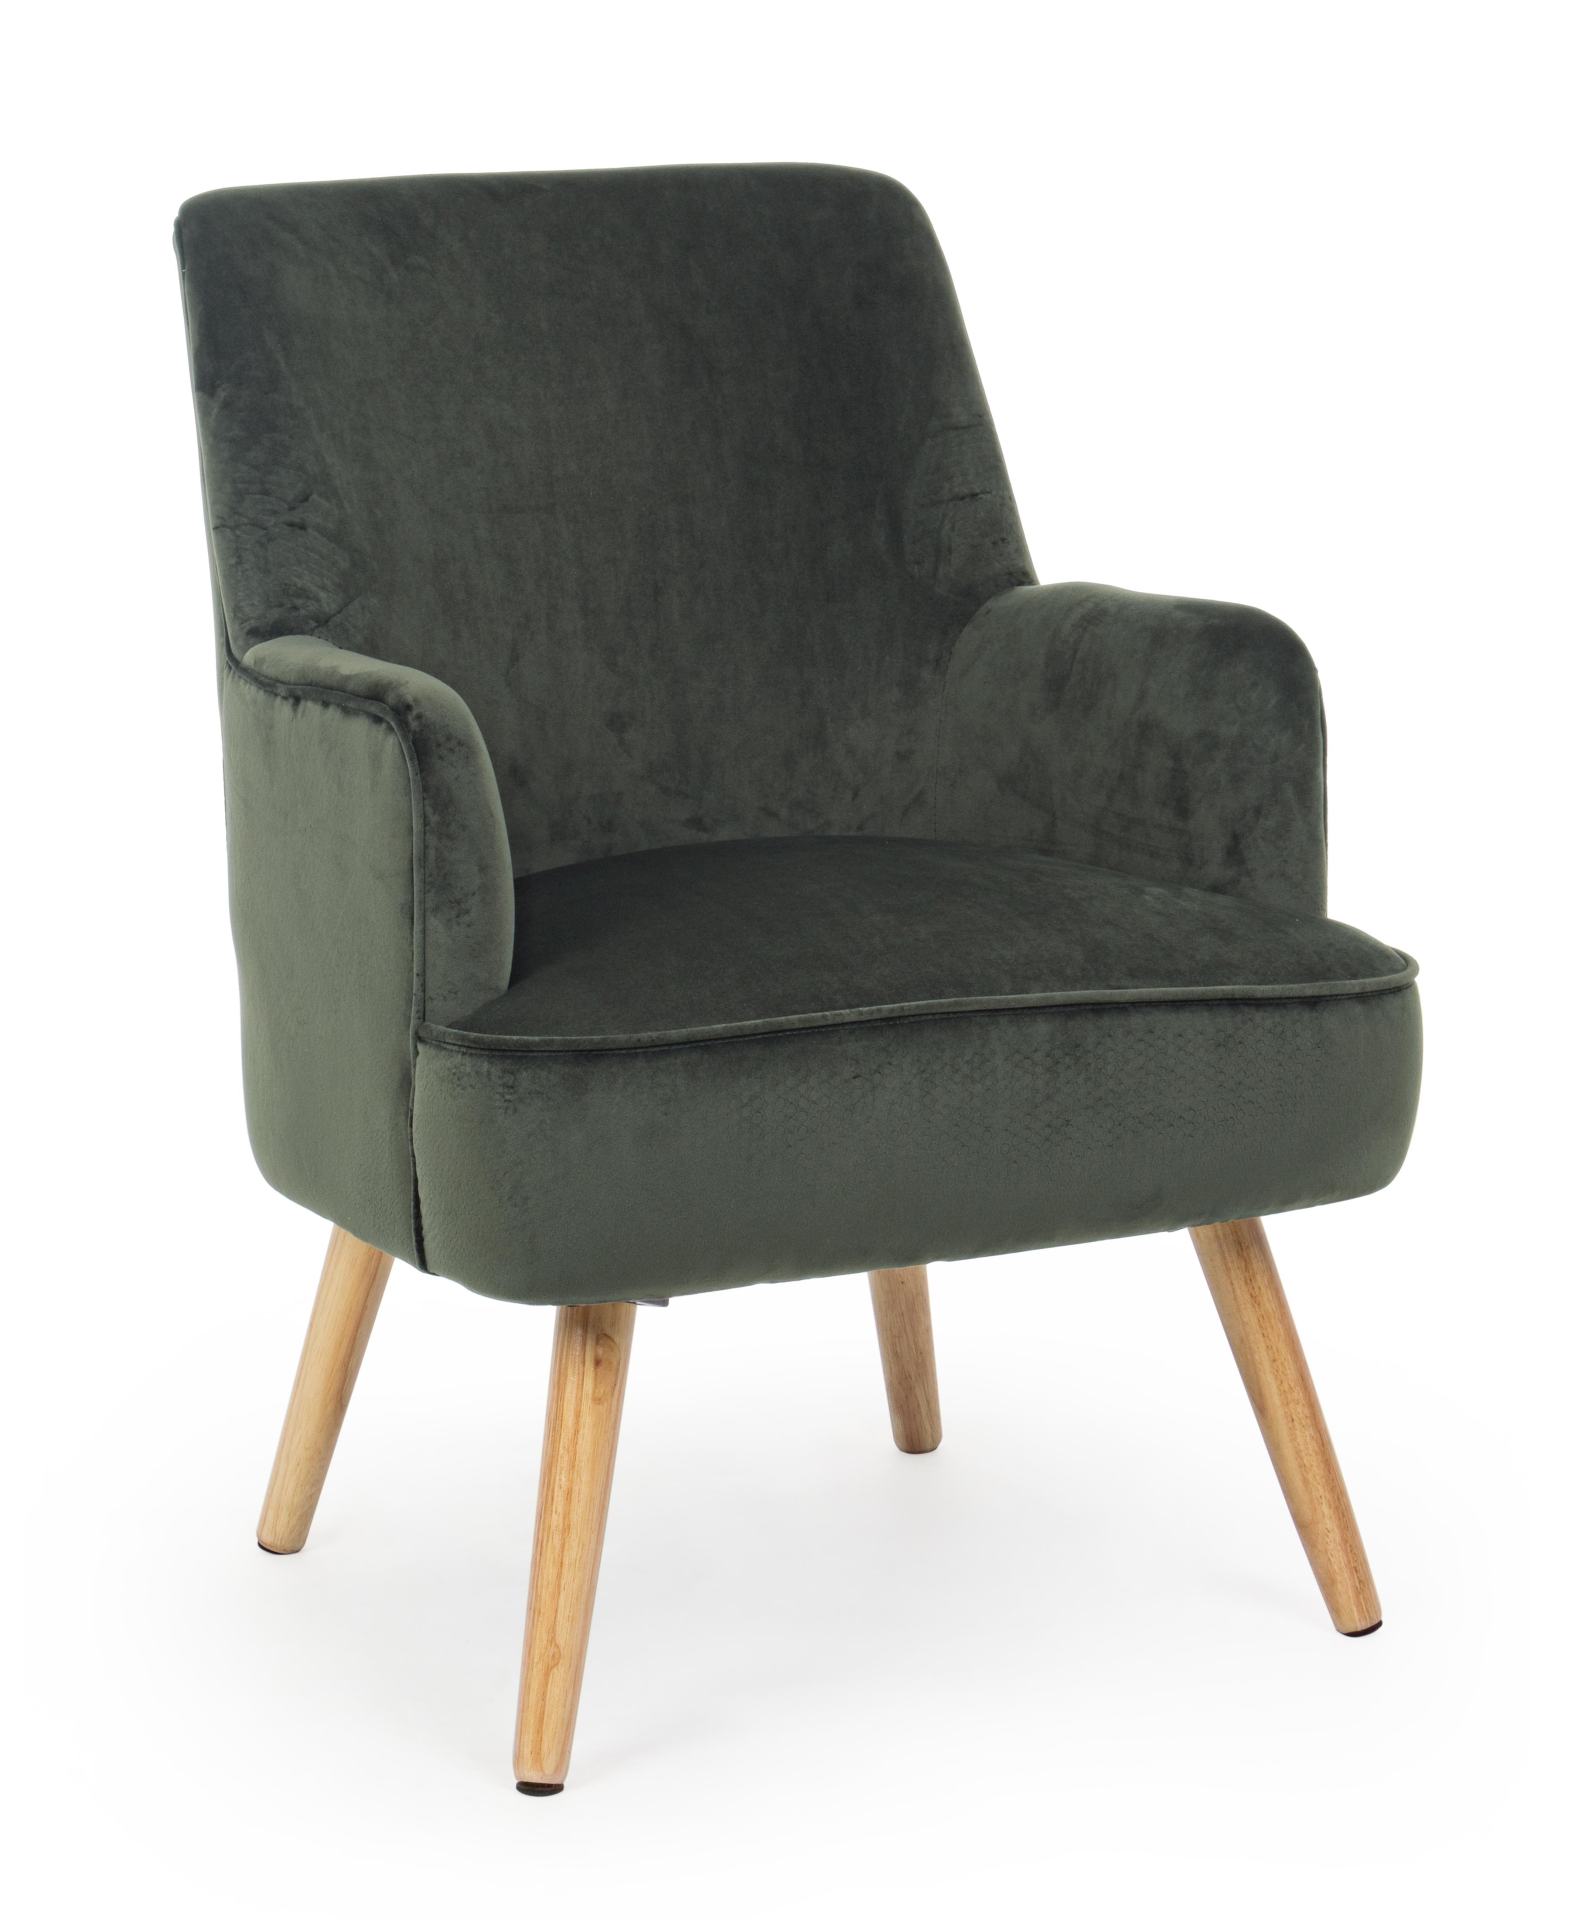 Der Sessel Adeline überzeugt mit seinem klassischen Design. Gefertigt wurde er aus Stoff in Samt-Optik, welcher einen grünen Farbton besitzt. Das Gestell ist aus Buchenholz und hat eine natürliche Farbe. Der Sessel besitzt eine Sitzhöhe von 42 cm. Die Bre